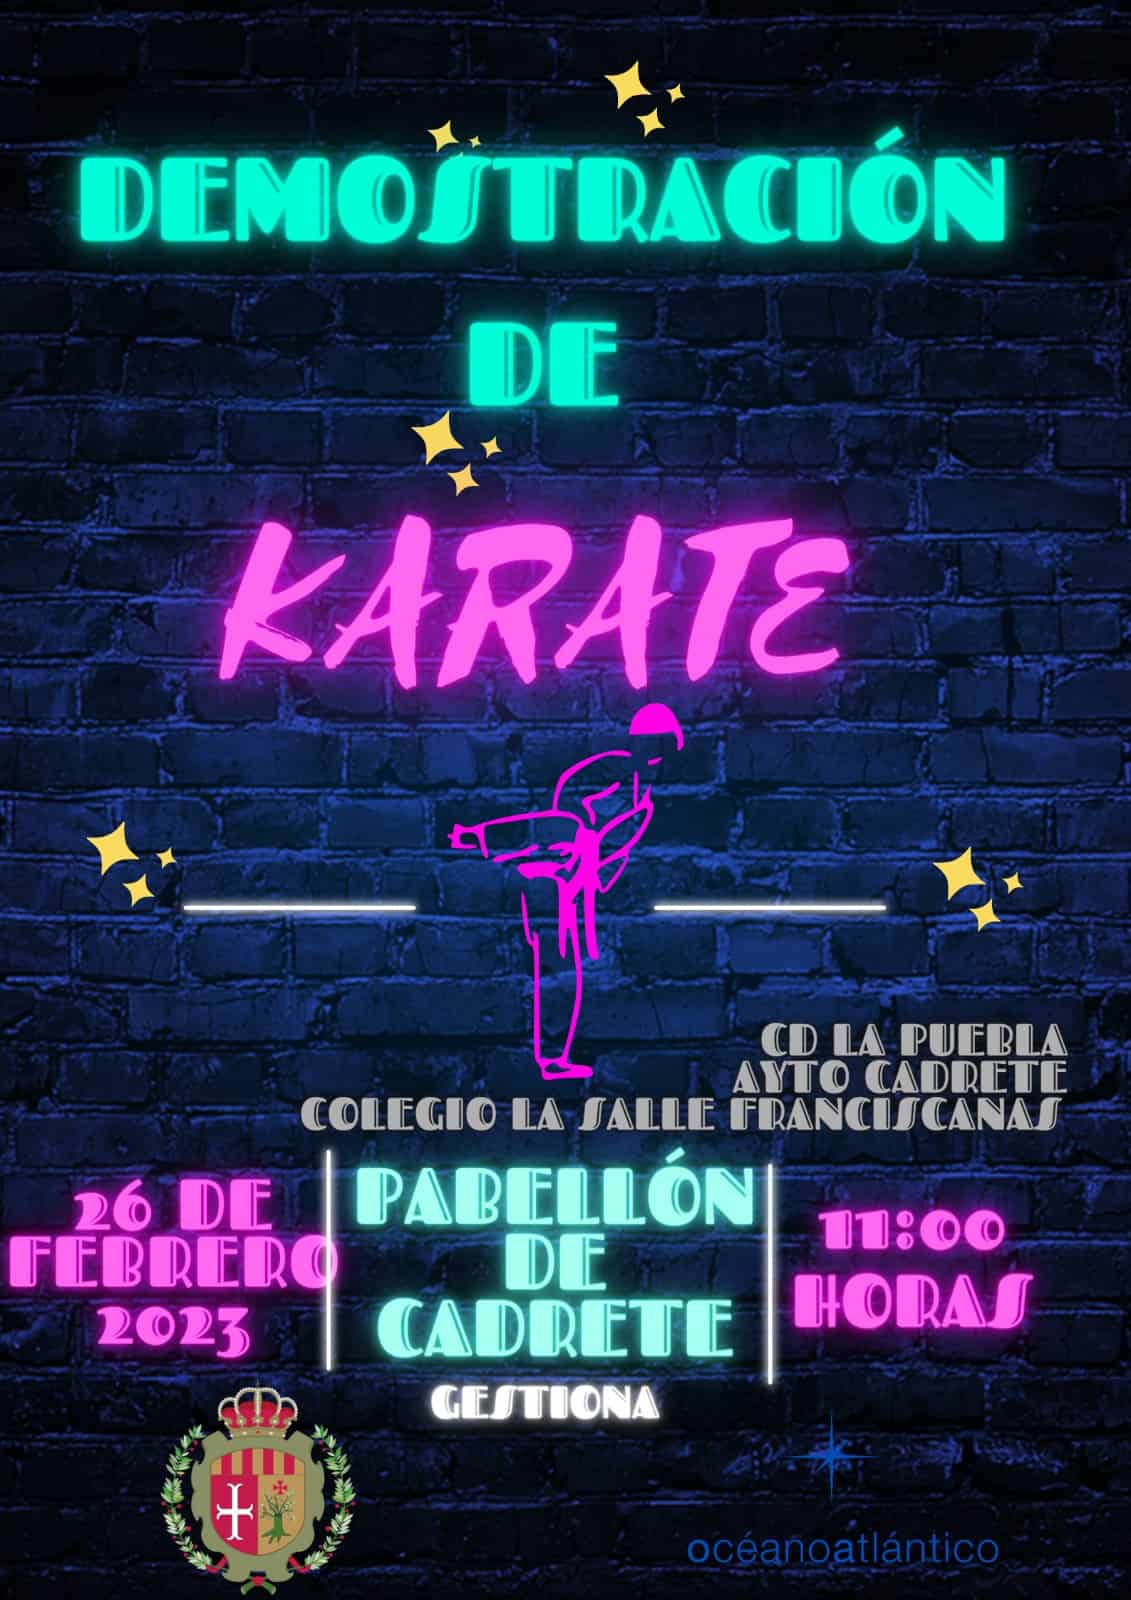 Demostración de Karate